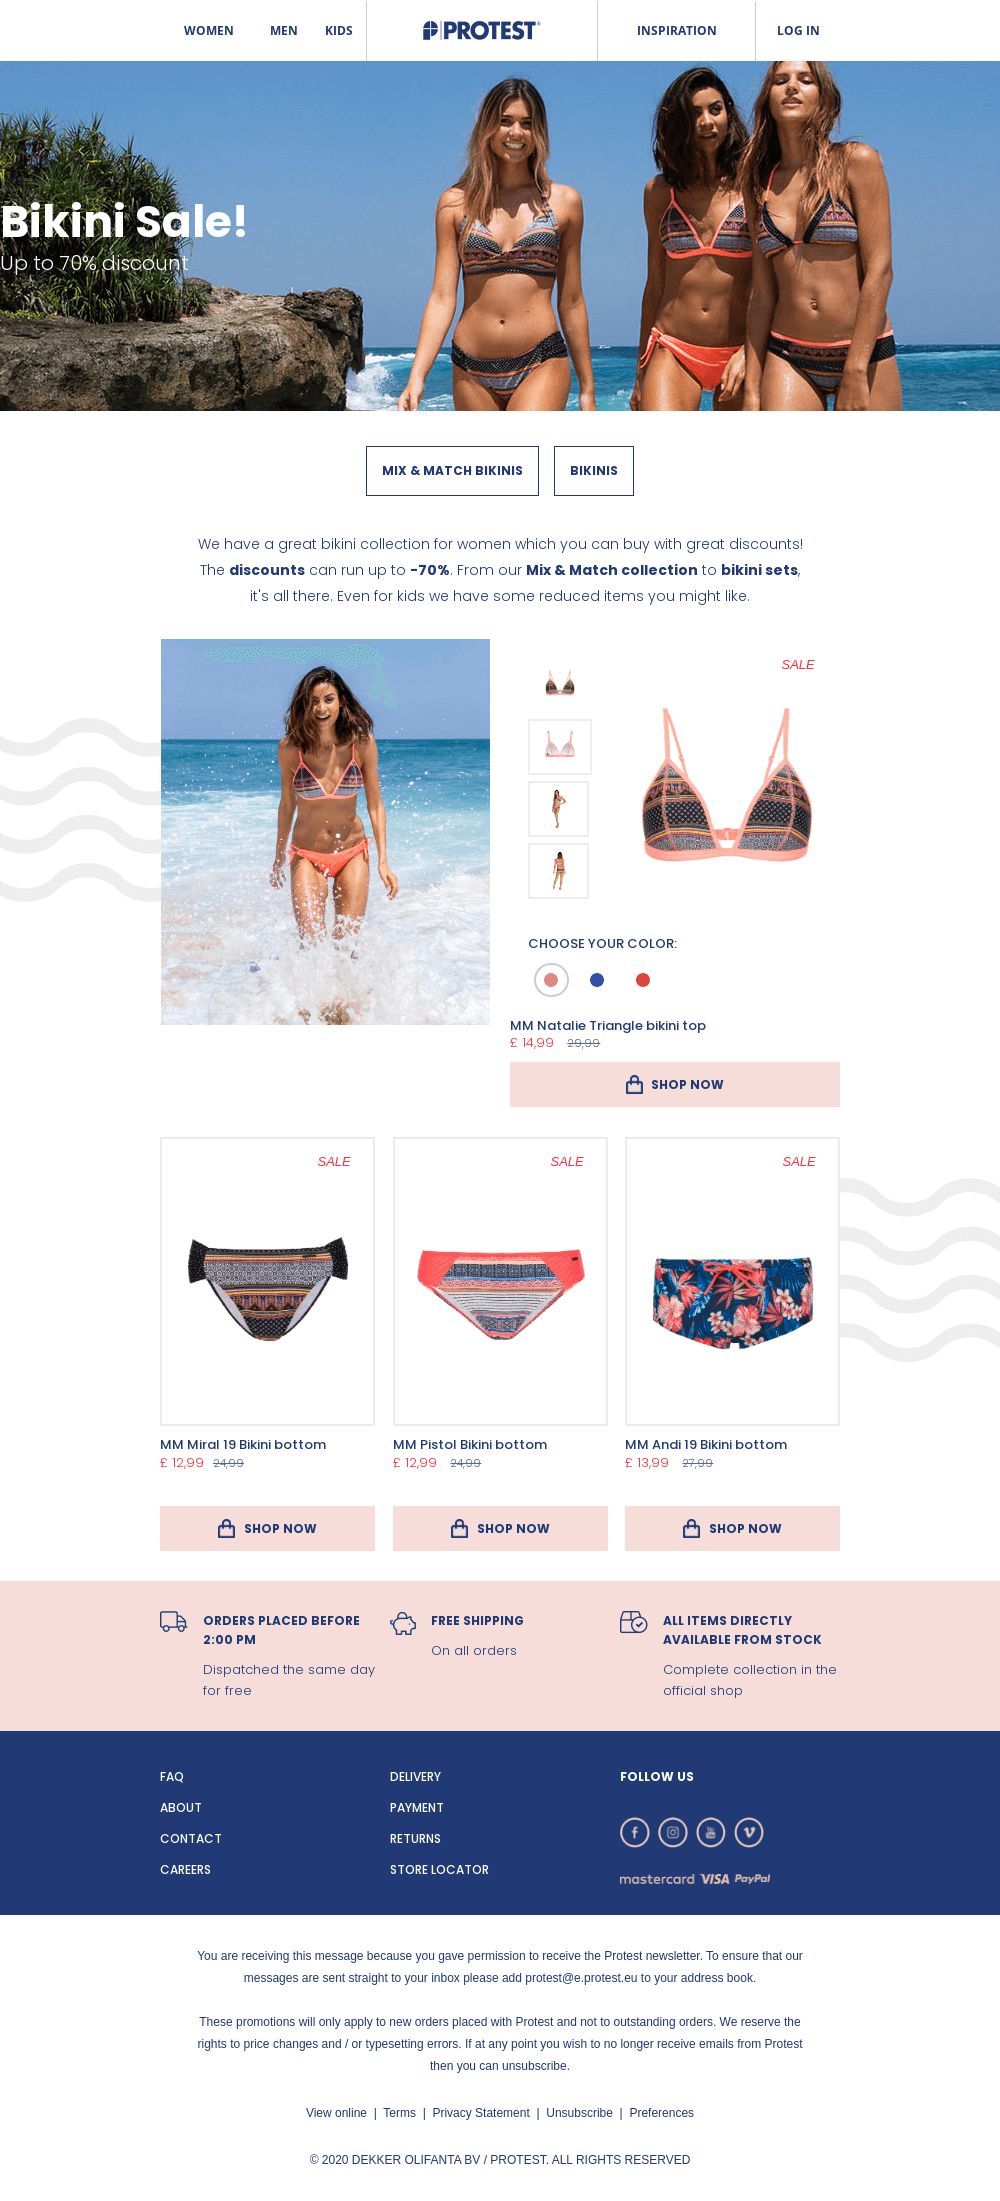 Bekritiseren Betasten Fondsen Bikini Sale! Discounts up to 70% - Desktop View | Really Good Emails